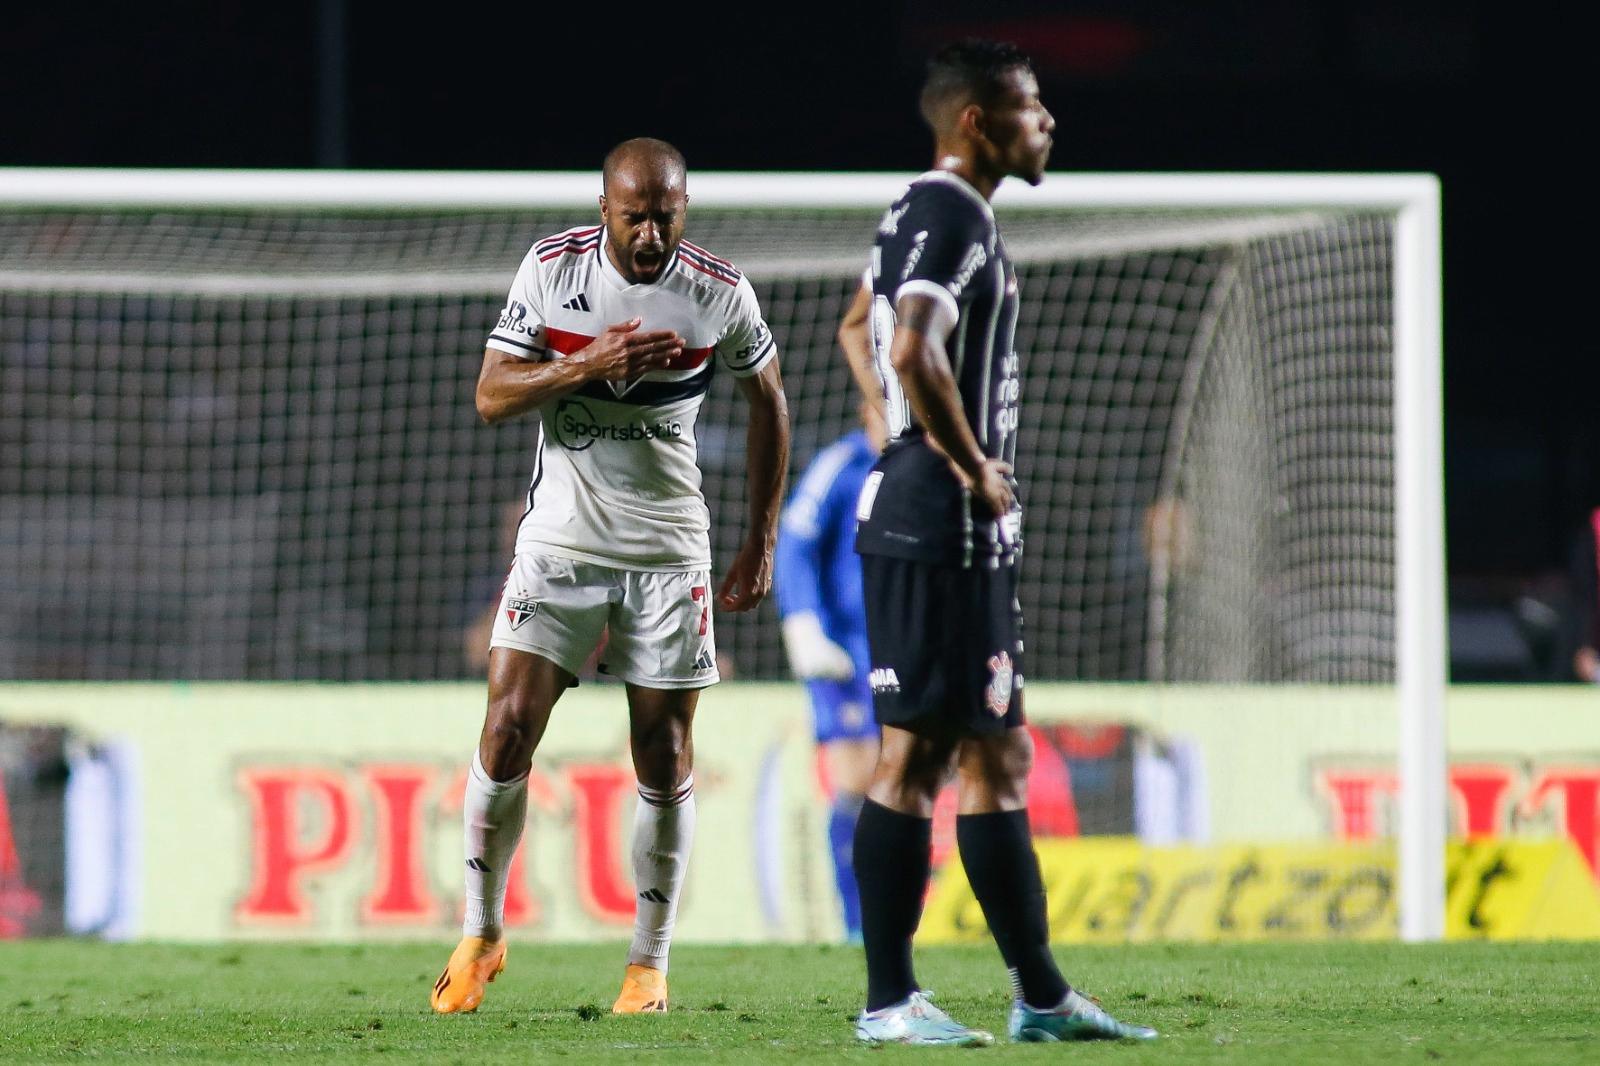 Lucas Moura comemorando seu gol no jogo contra o Corinthians (Foto: Miguel Schincariol/Getty Images)